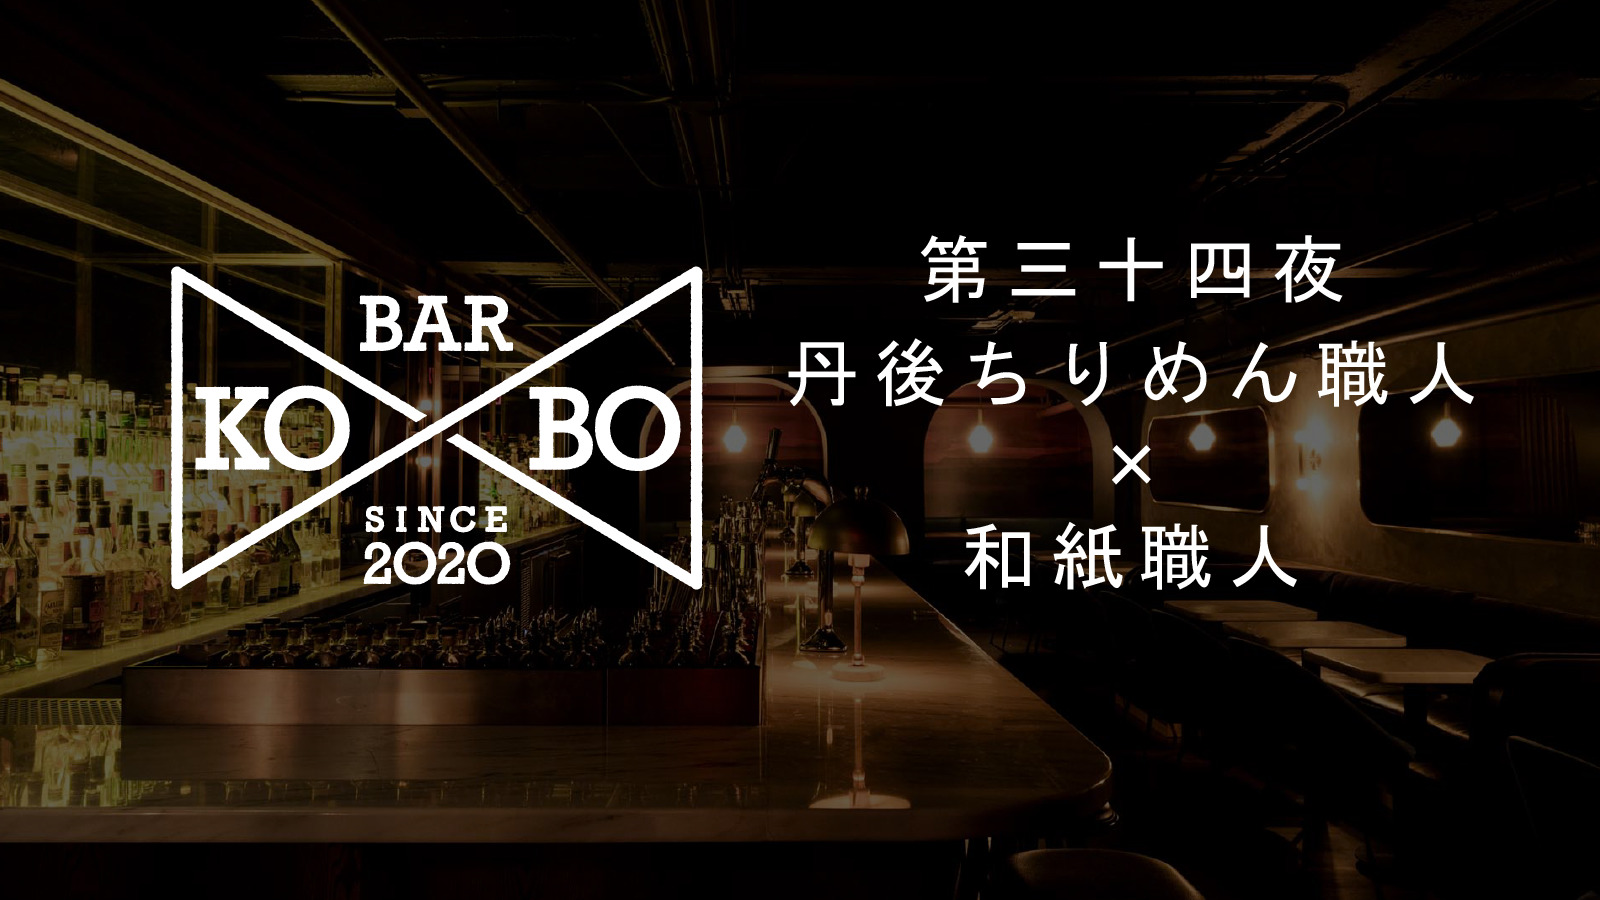 【Bar KO-BO 第三十四夜】丹後ちりめん職人×和紙職人